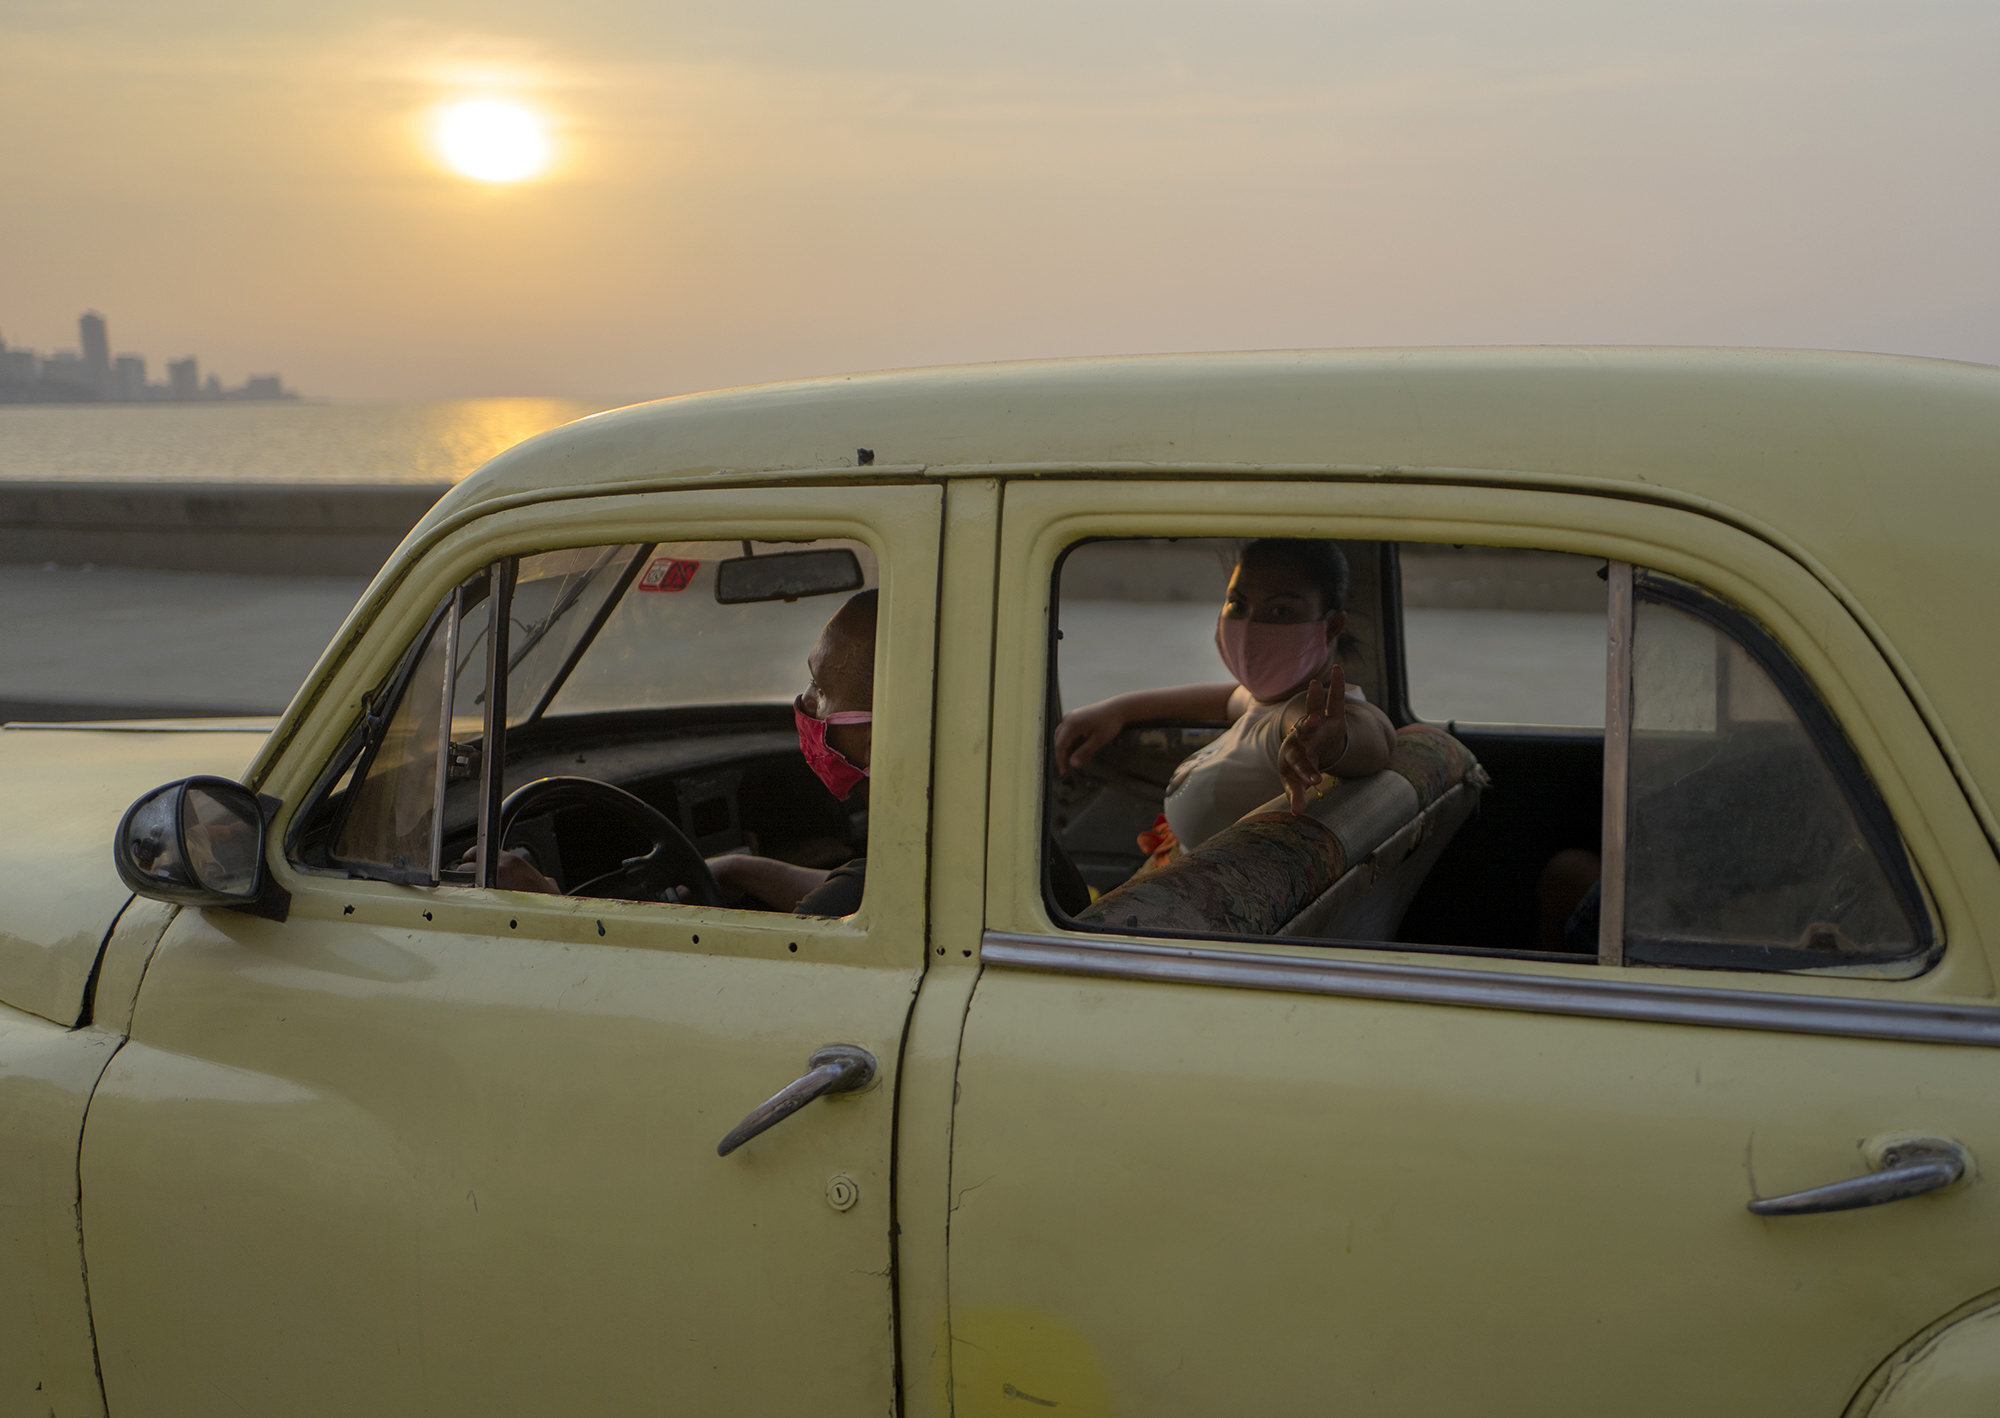  Cubanos con el tapabocas puesto dentro de un carro americano clsico recorren a lo largo del Malecn durante el atardecer en La Habana, Cuba, Abril 14, 2020. 